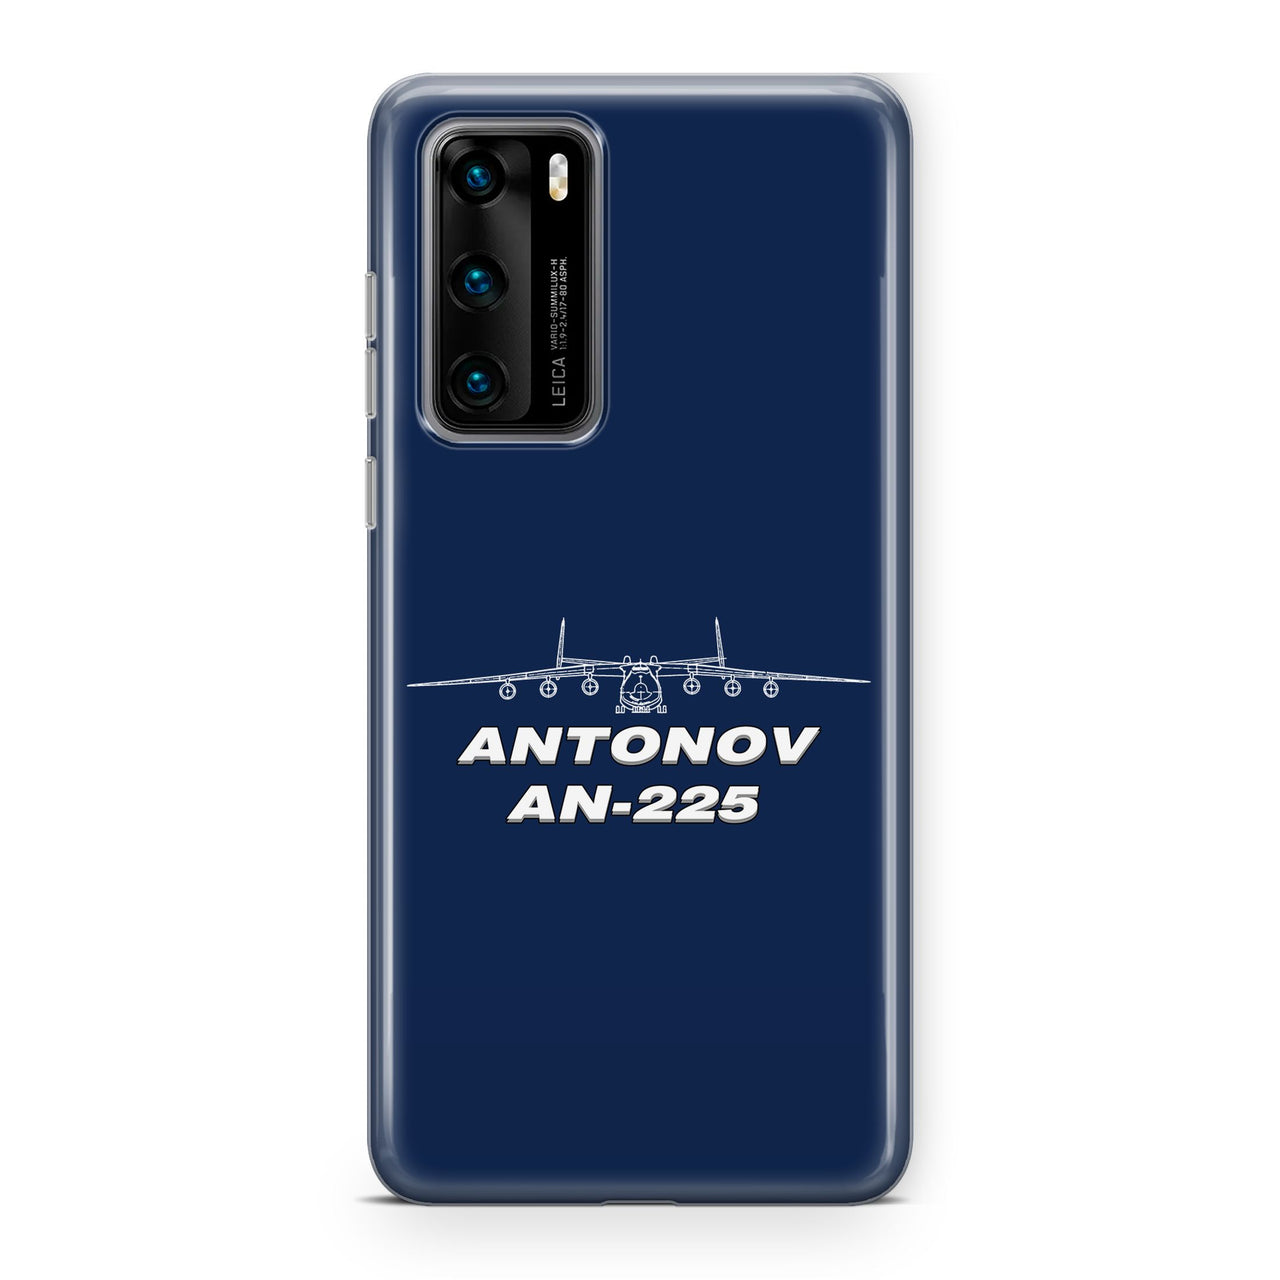 Antonov AN-225 (26) Designed Huawei Cases